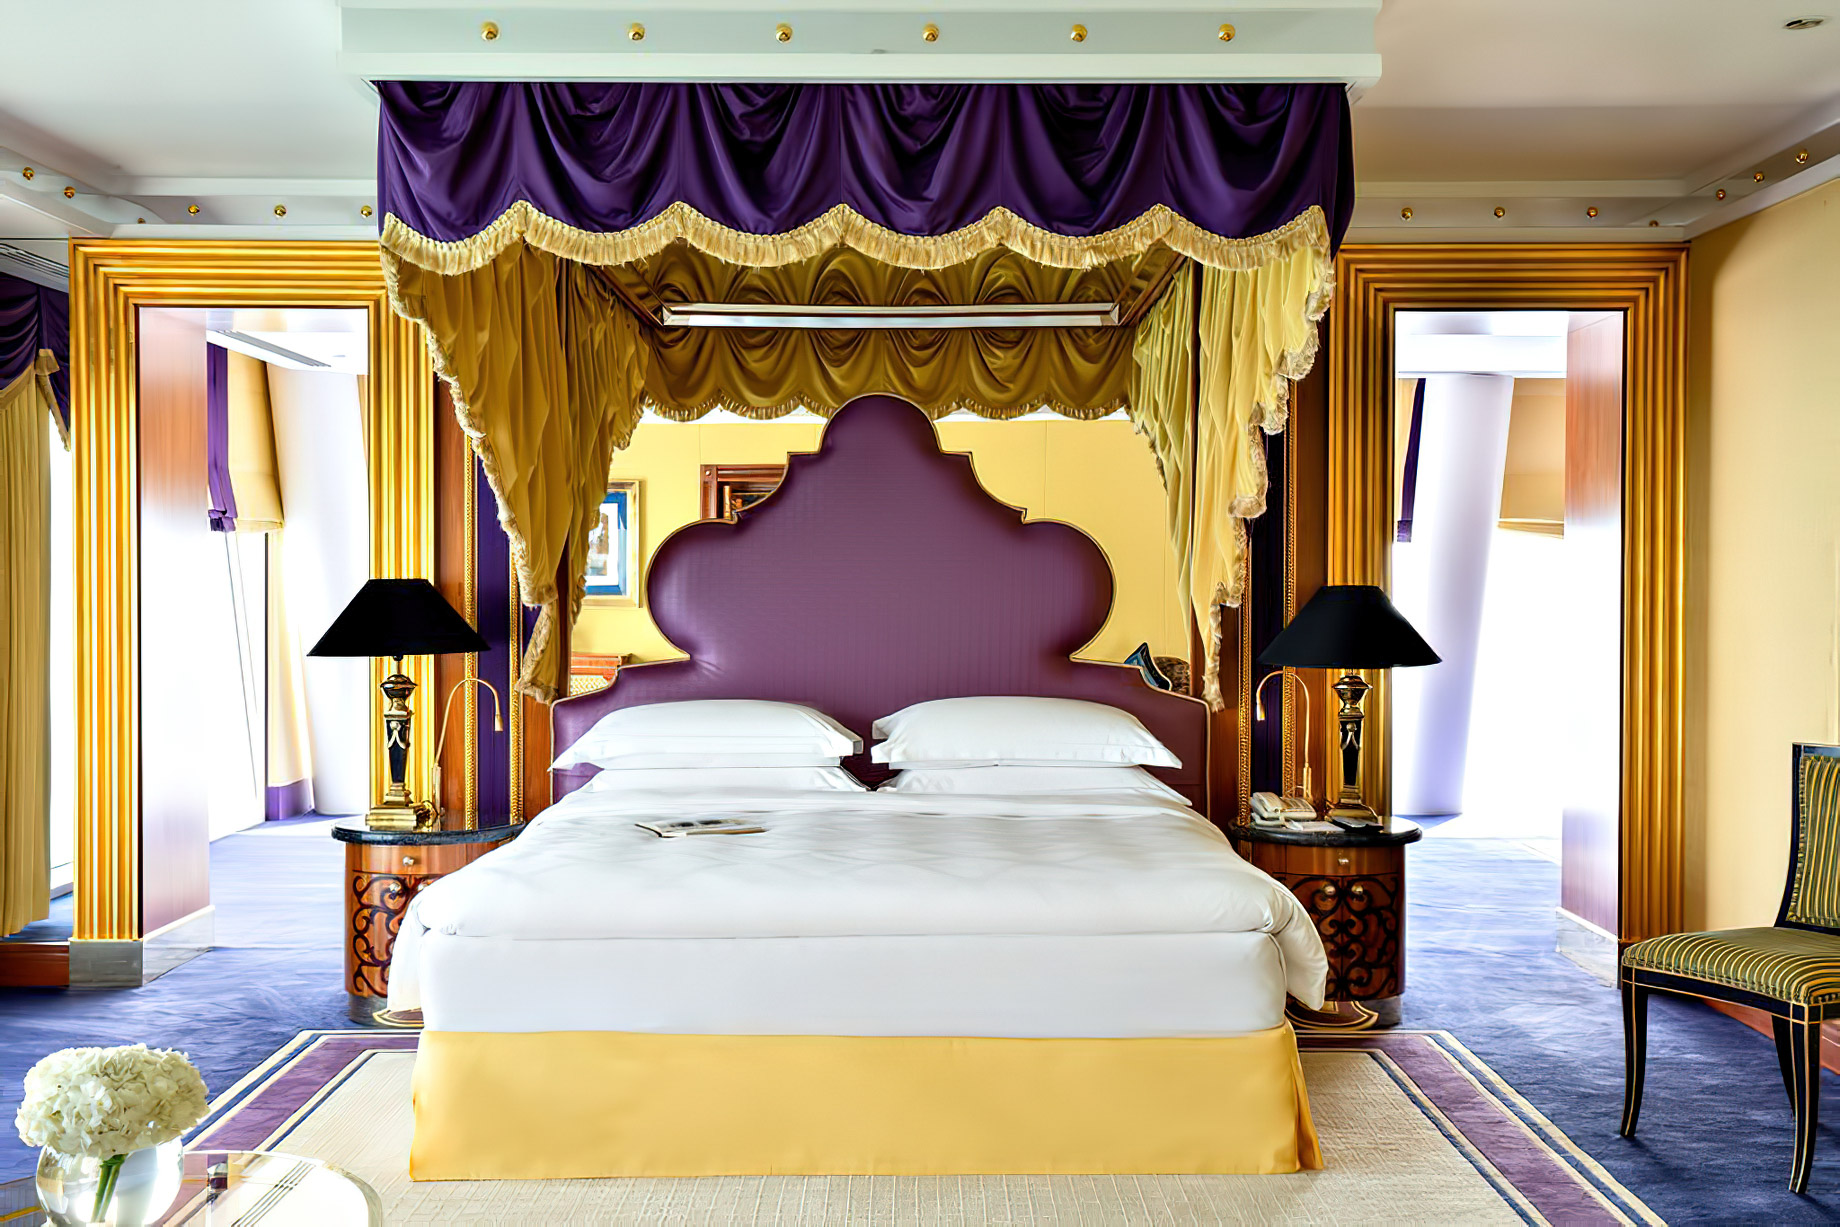 Burj Al Arab Jumeirah Hotel – Dubai, UAE – Diplomatic Suite Bedroom